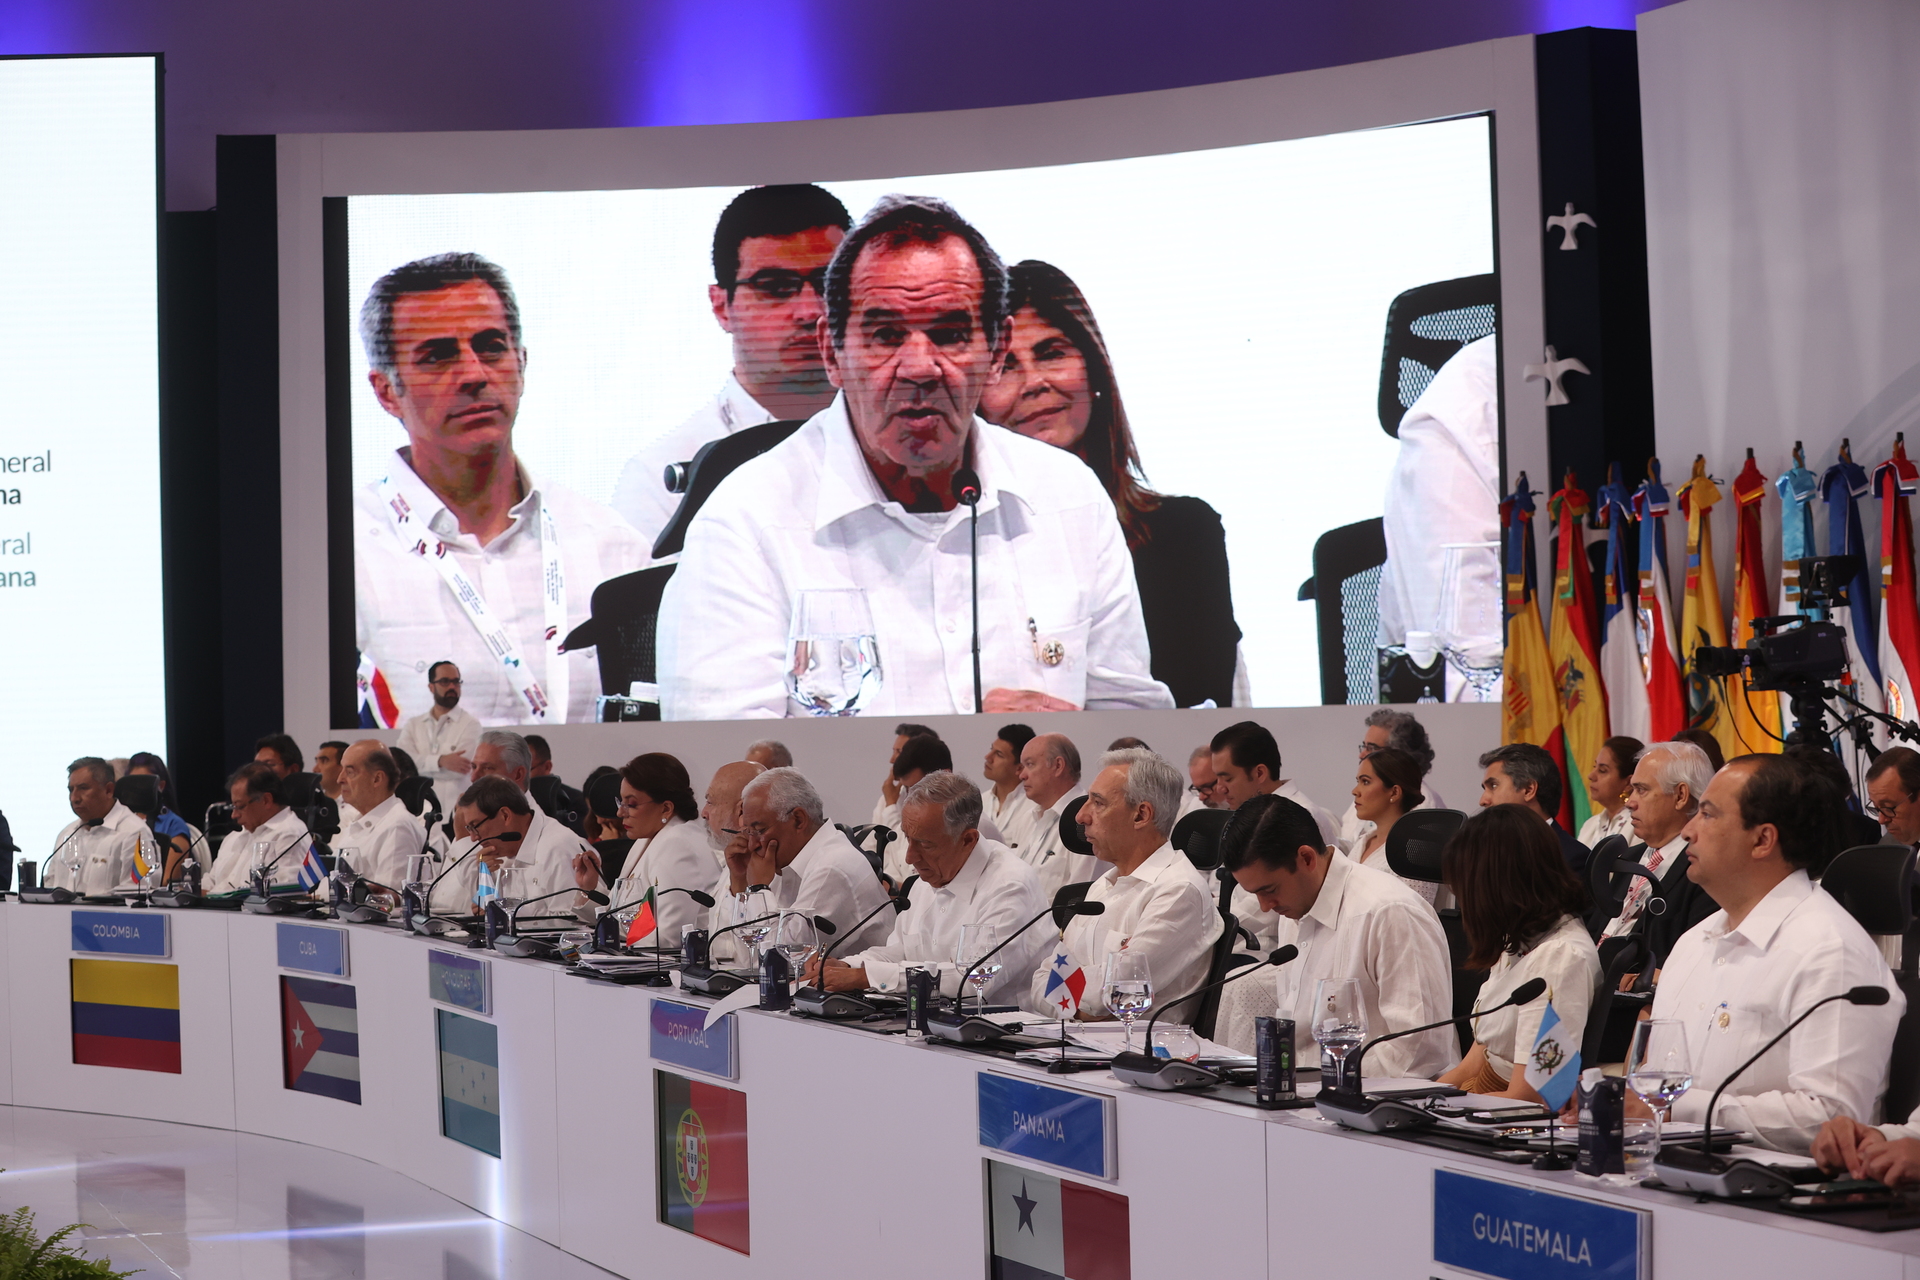 La reunión regional cuenta con una representación plena de los 22 países iberoamericanos. (ORLANDO BARRÍA / EFE)